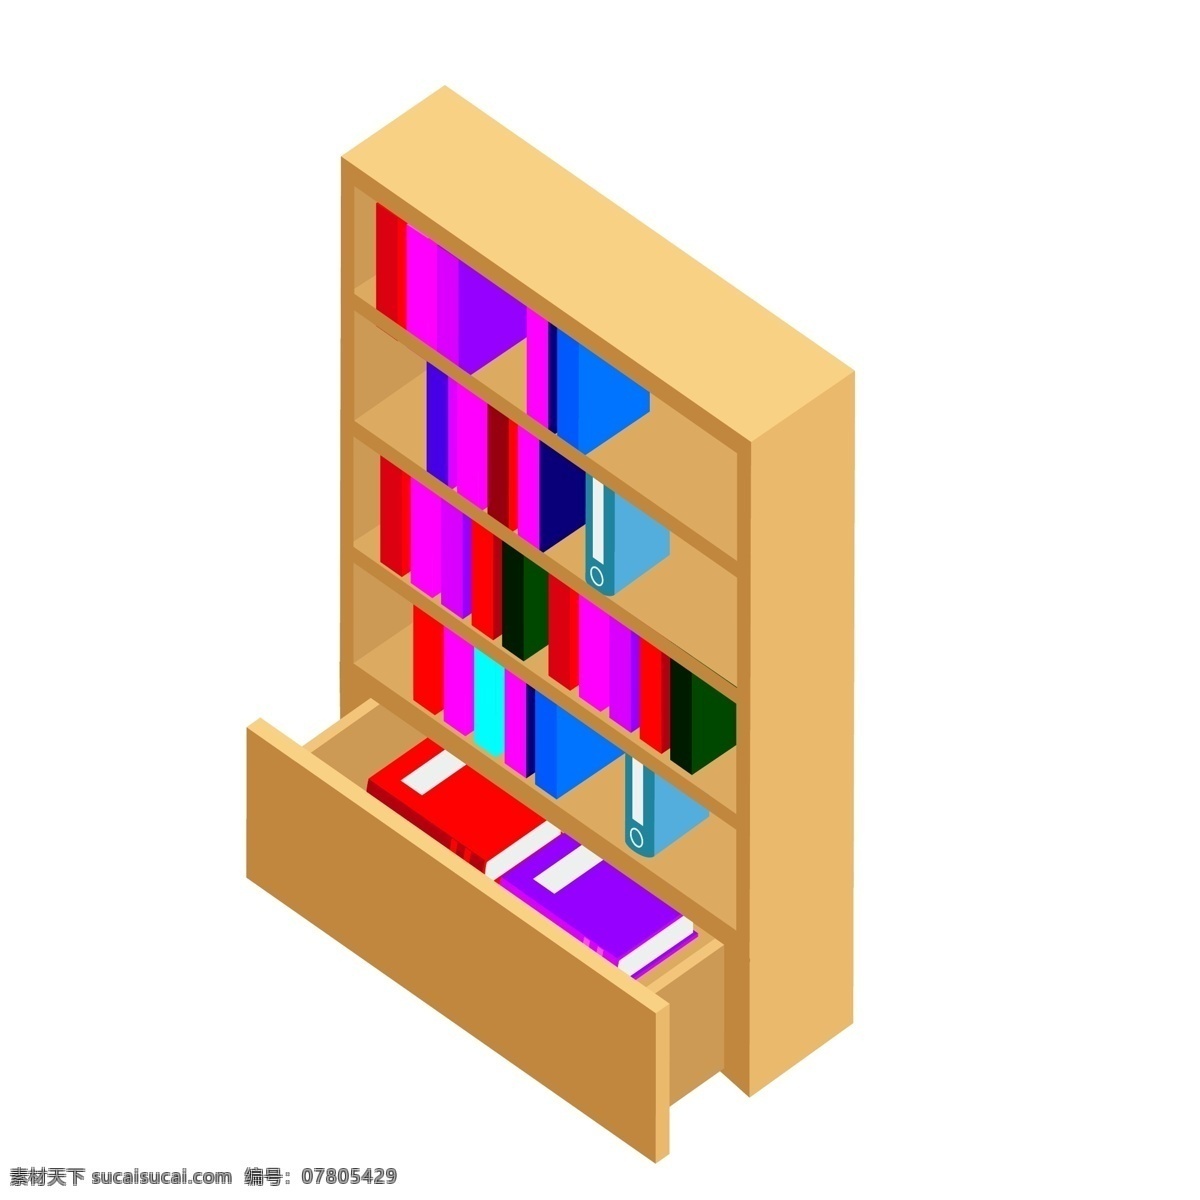 d 复合式 书柜 书架 家具 元素 合集 柜子 衣柜 木质 书桌 抽屉 书